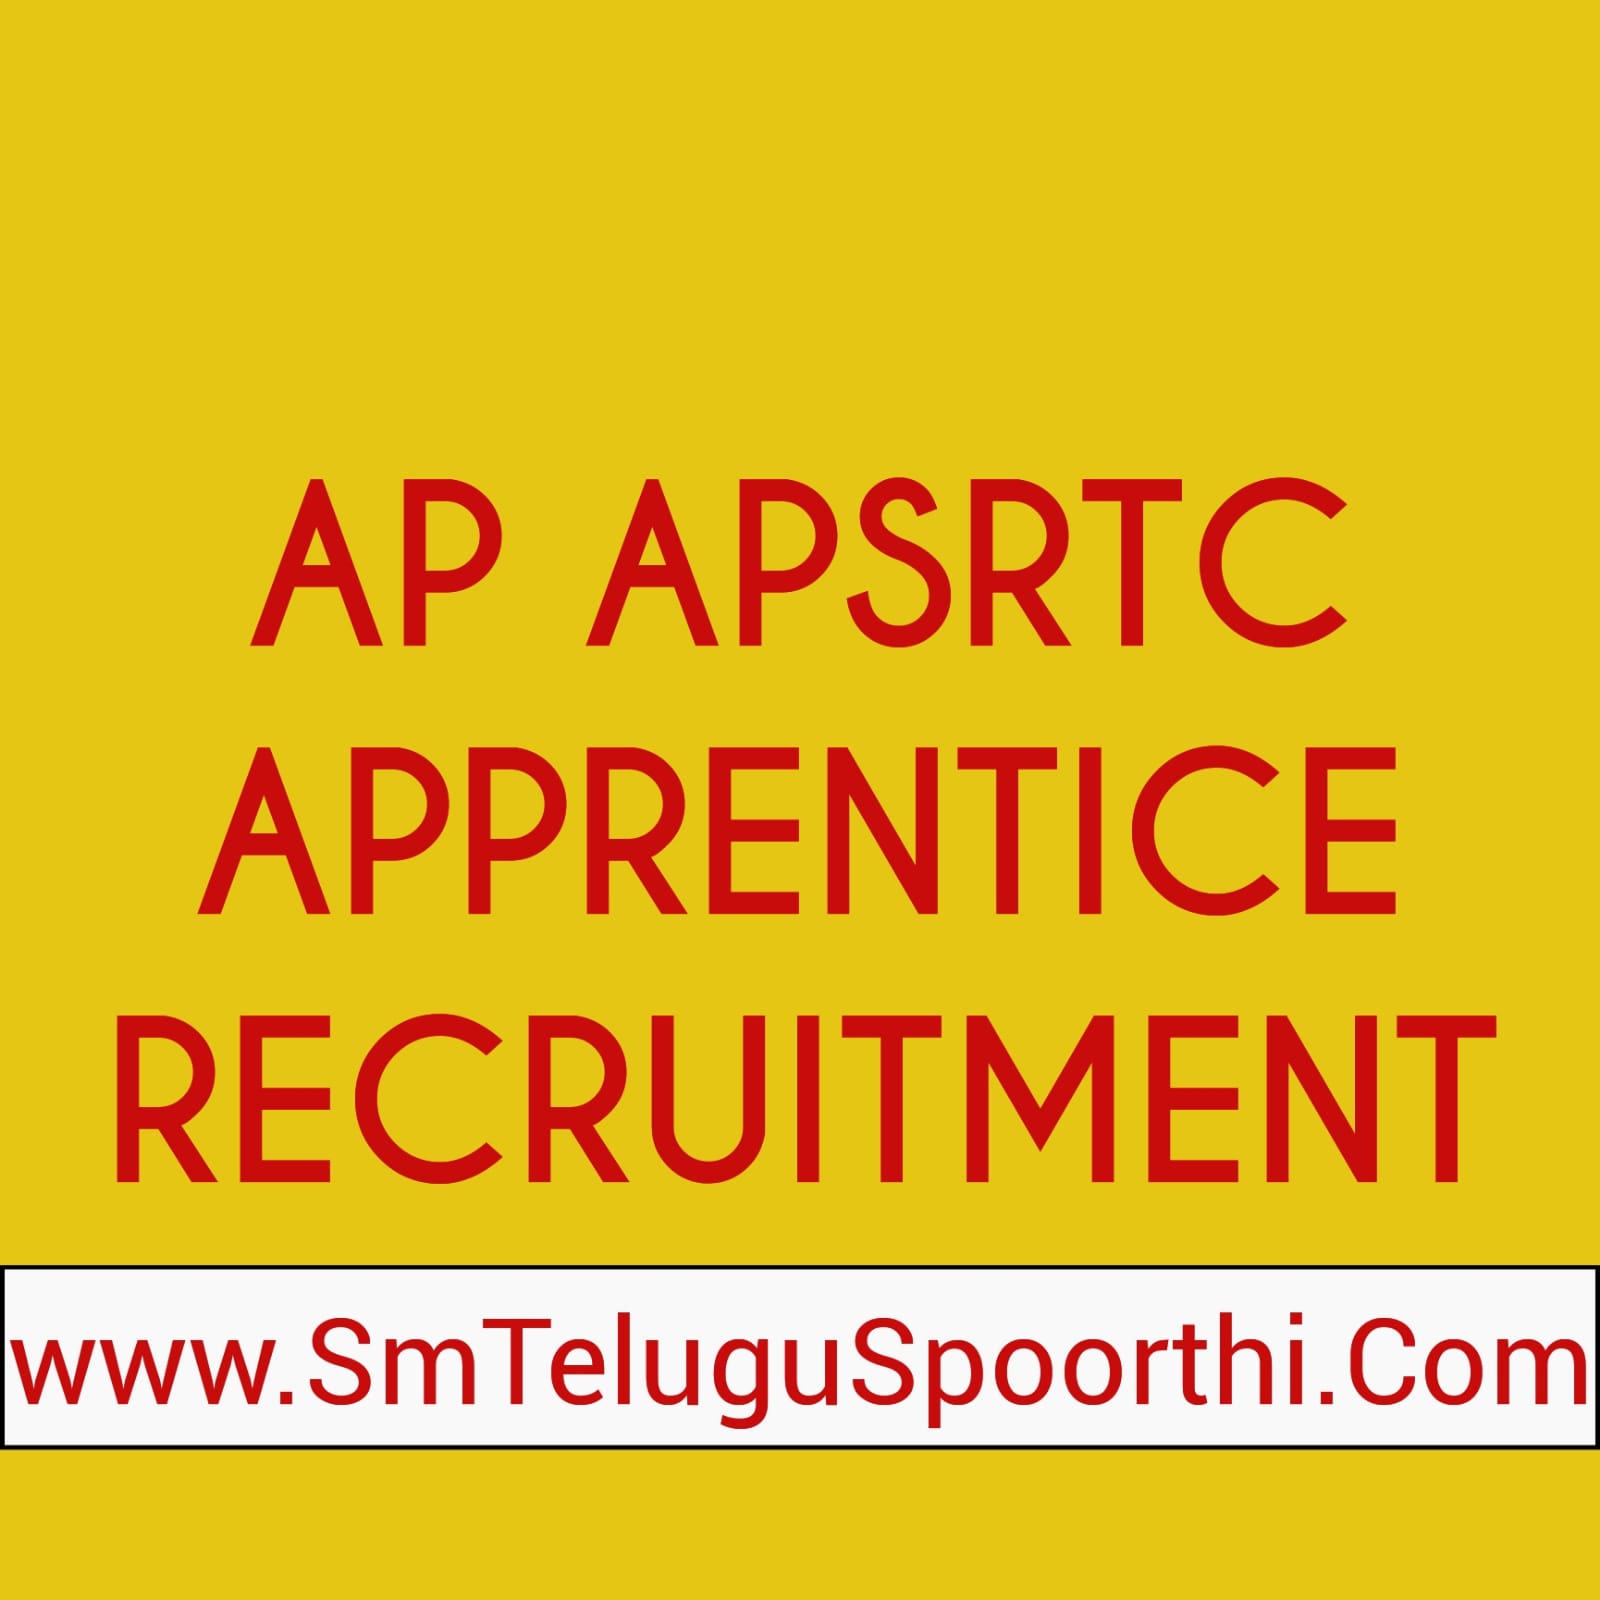 apsrtc apprentice recruitment